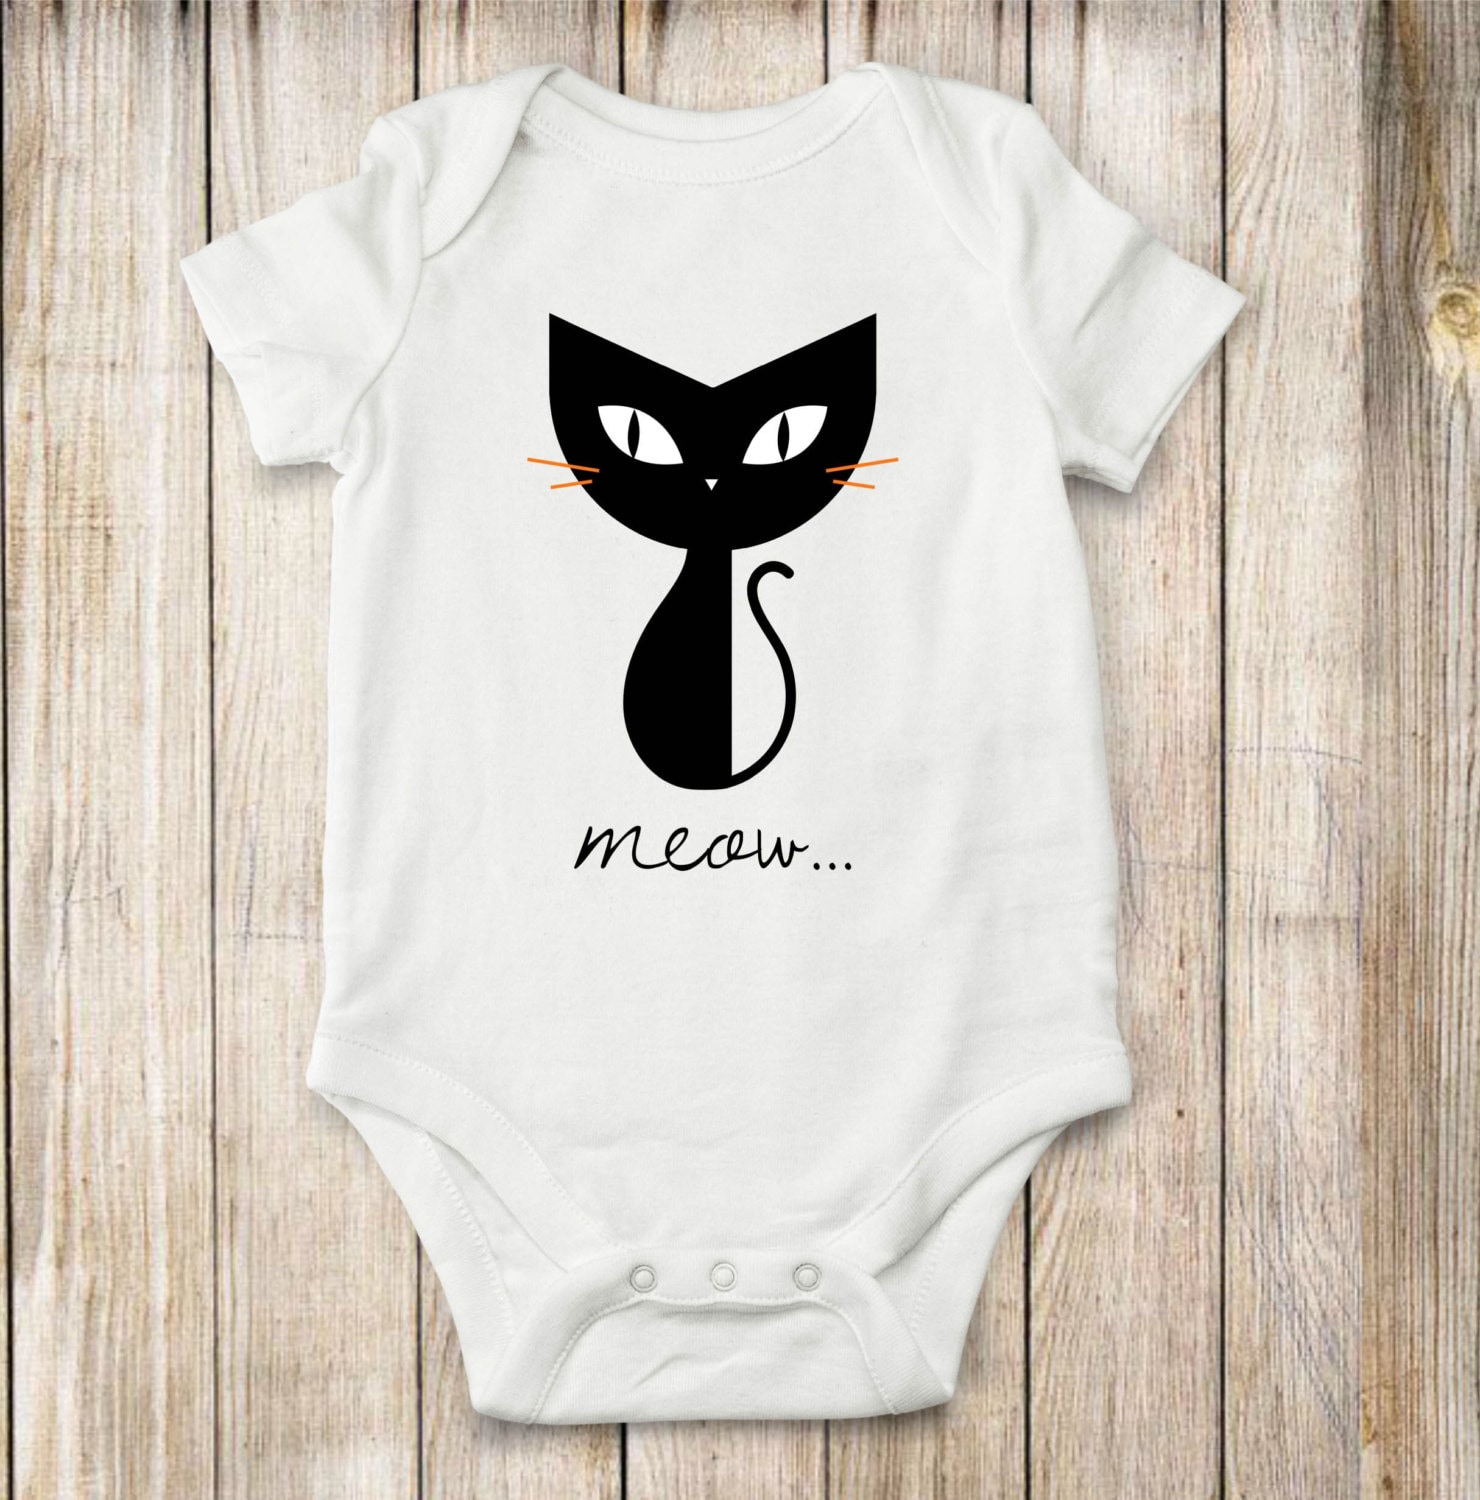 Cat Black Cat Onesie Baby Clothes